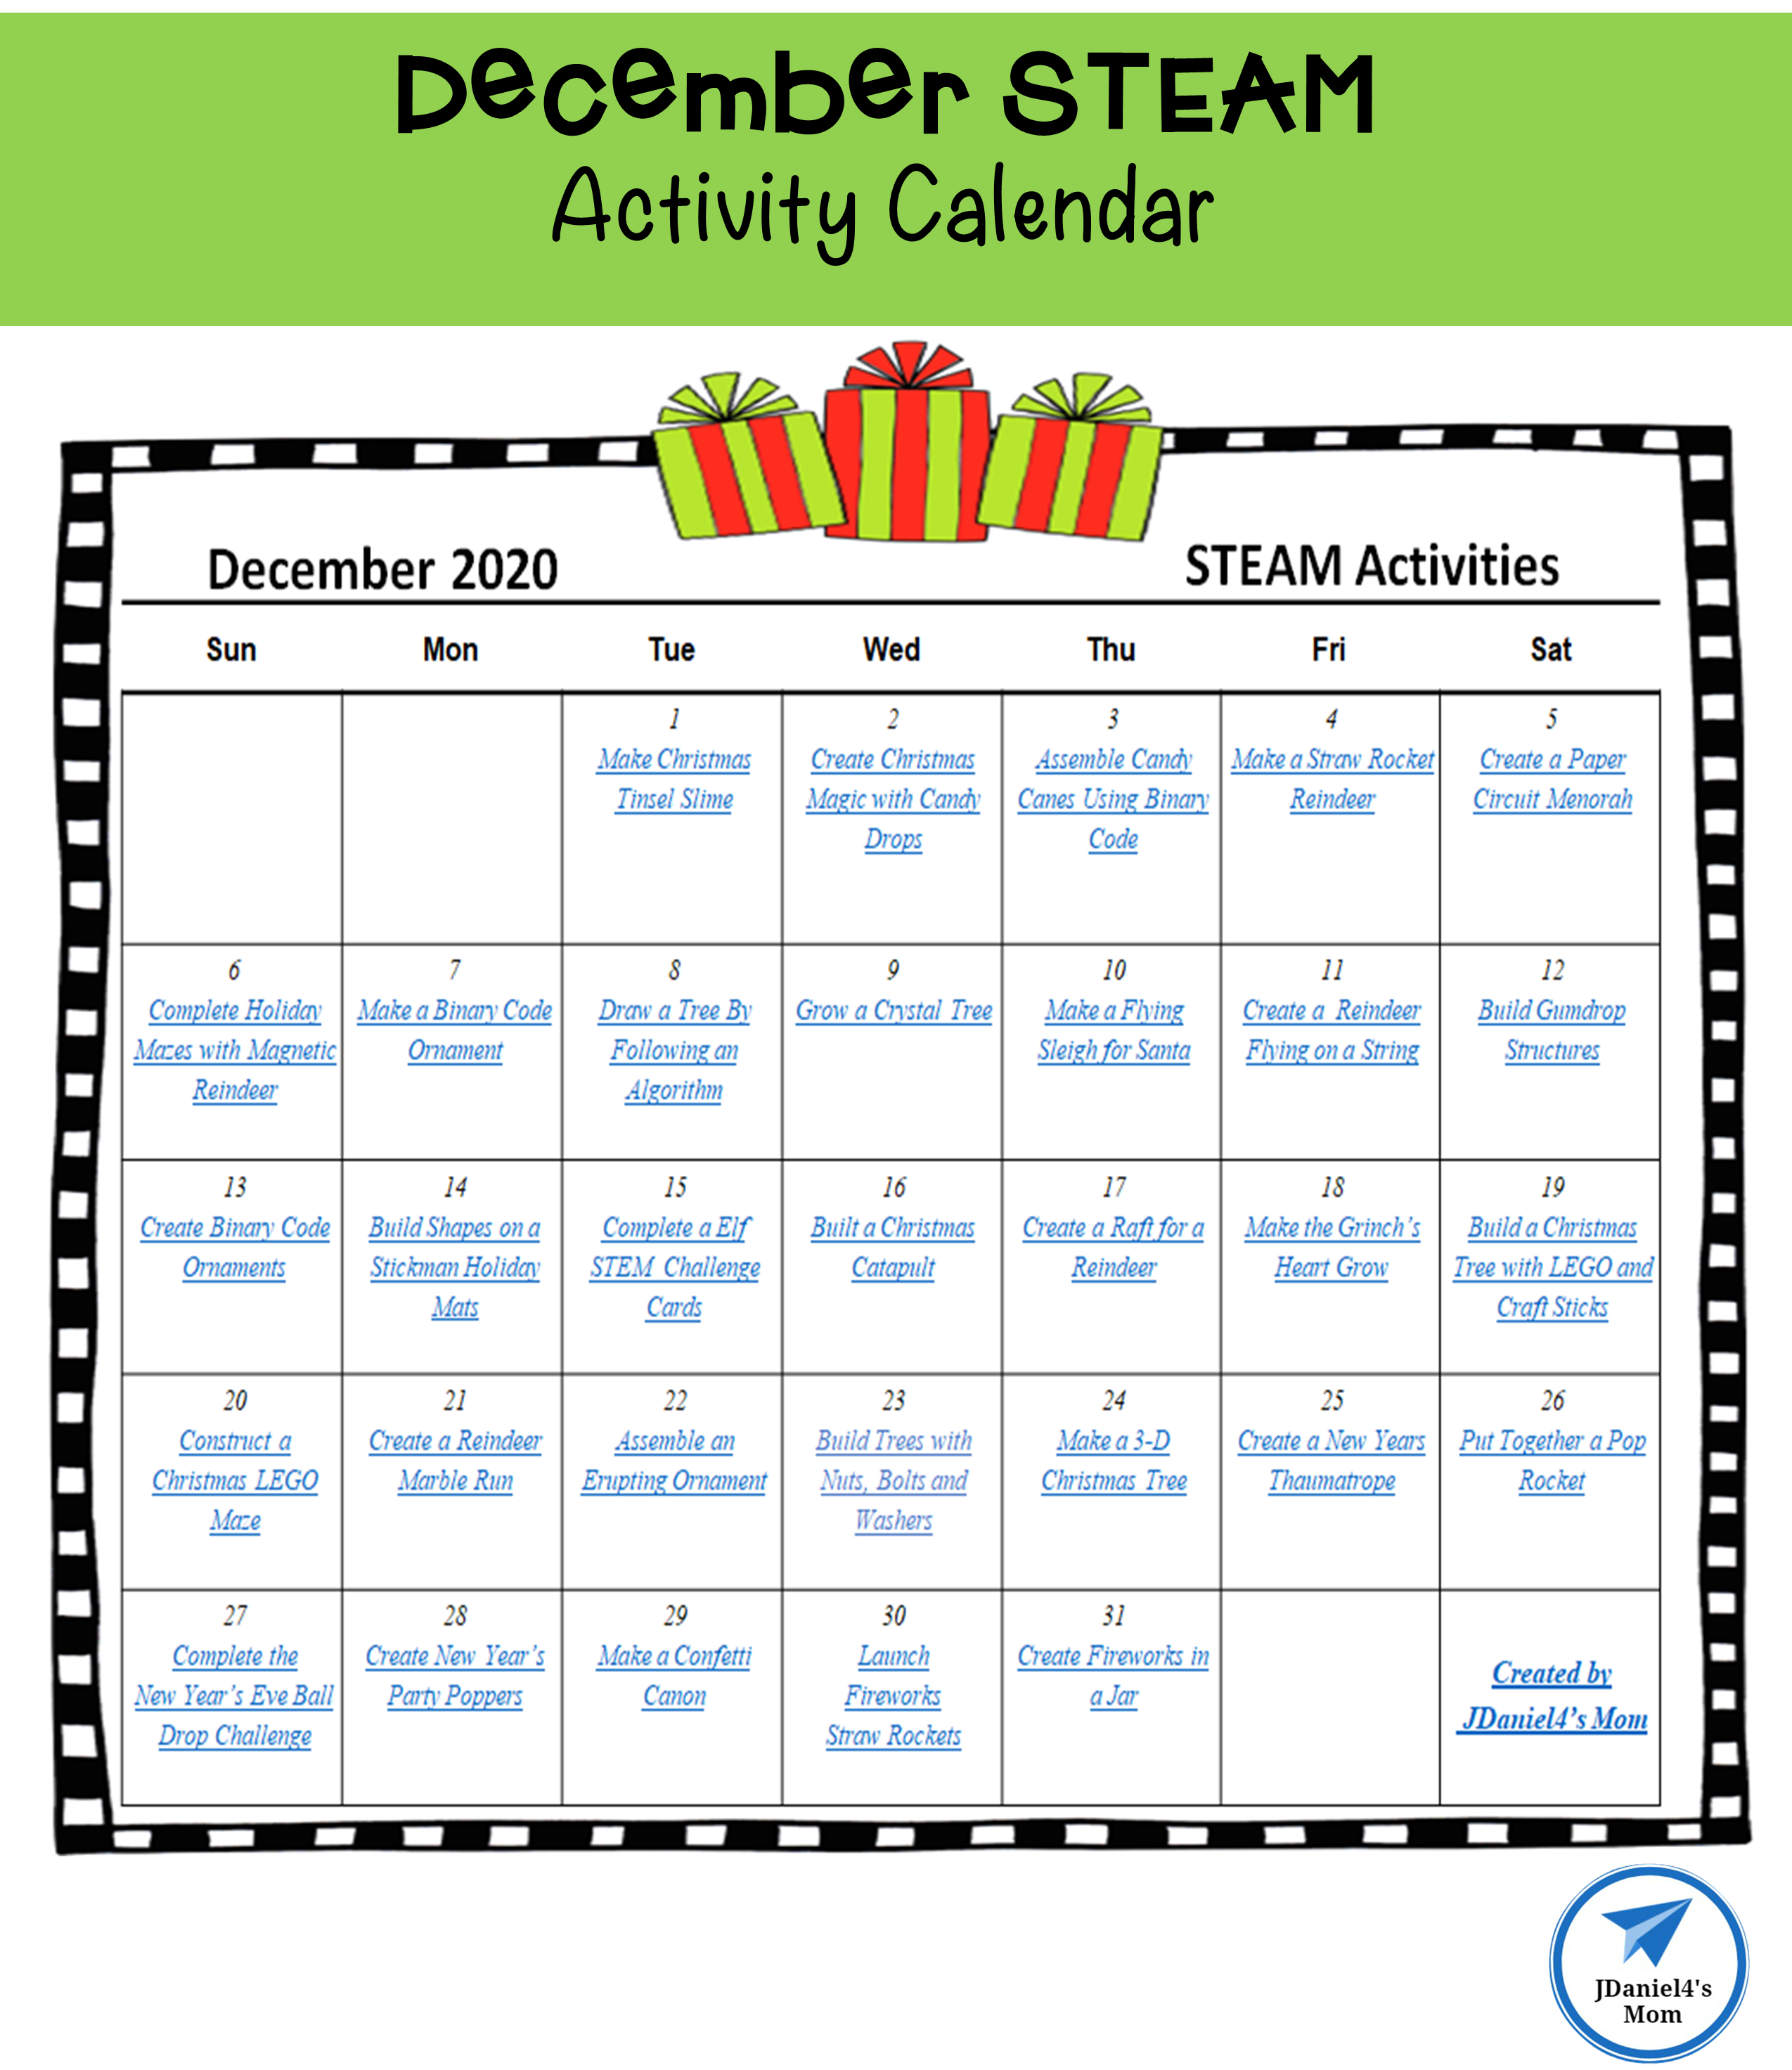 December STEAM Activity Calendar